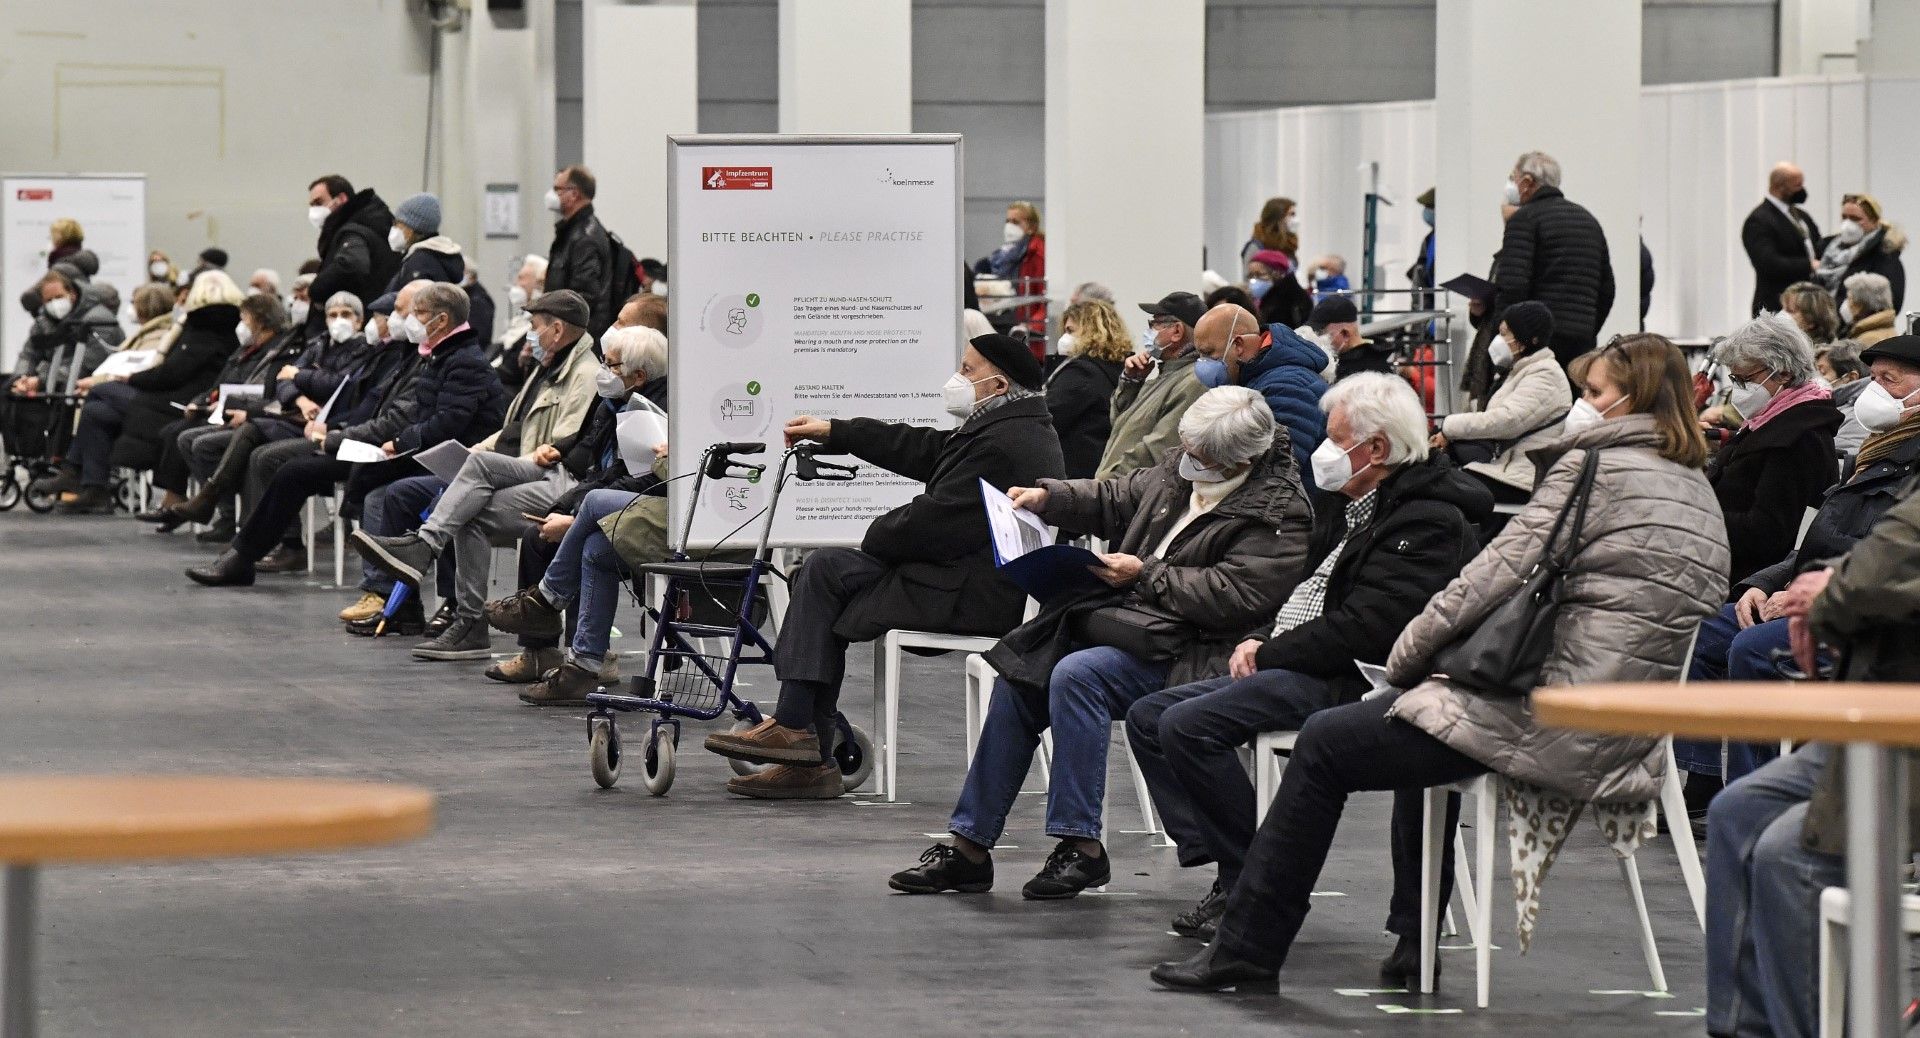 Възрастни хора чакат за ваксинация с препарата на Пфайзер - Байонтех в Кьолн на 8 февруари